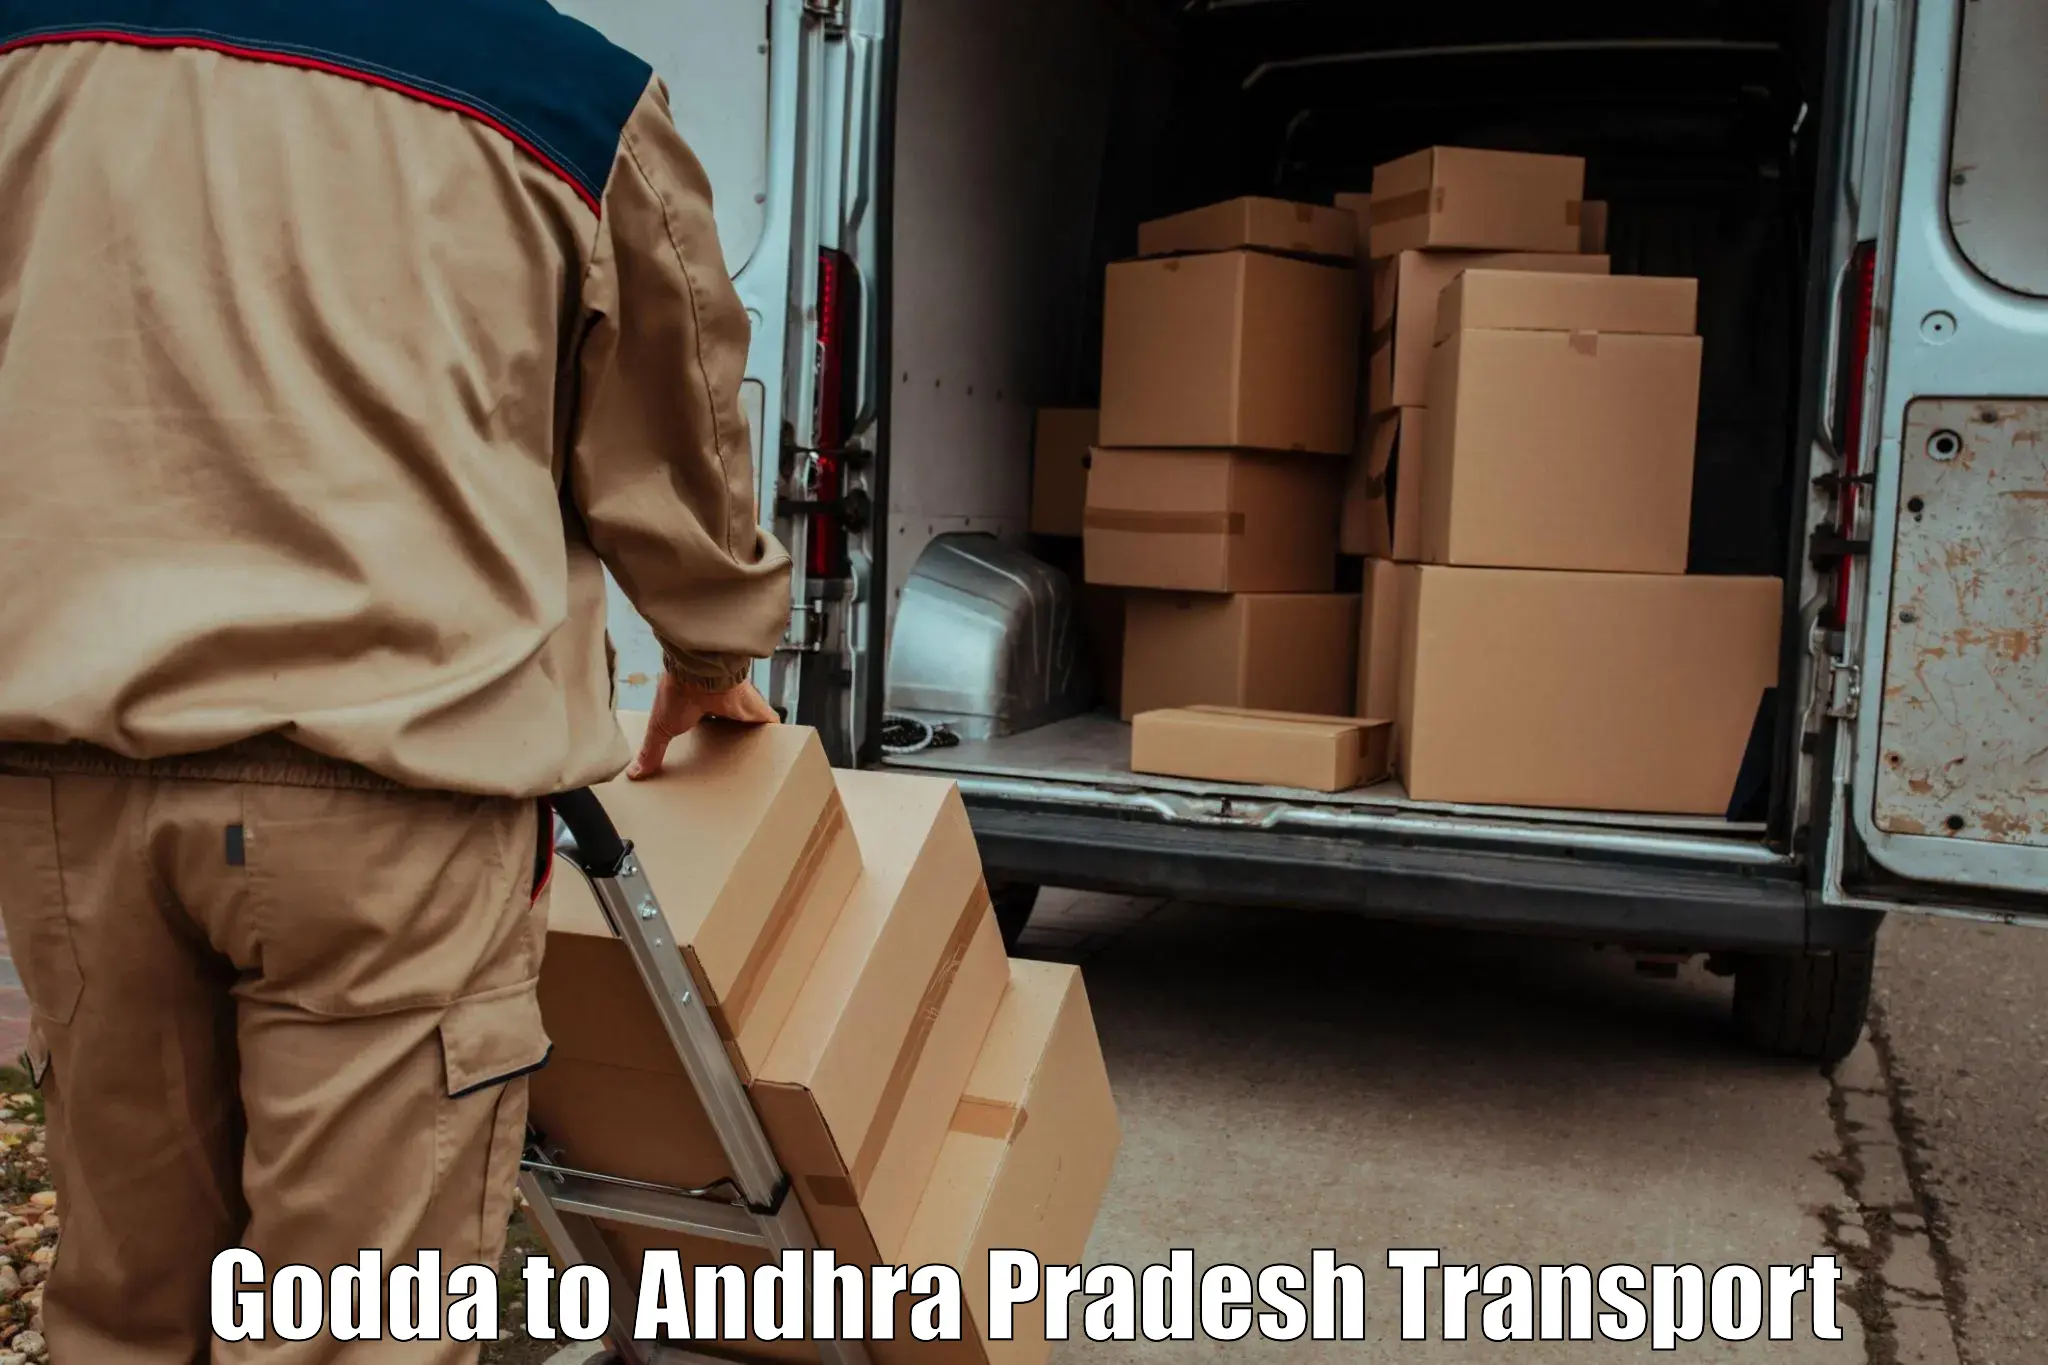 Online transport service Godda to Rajayyapeta